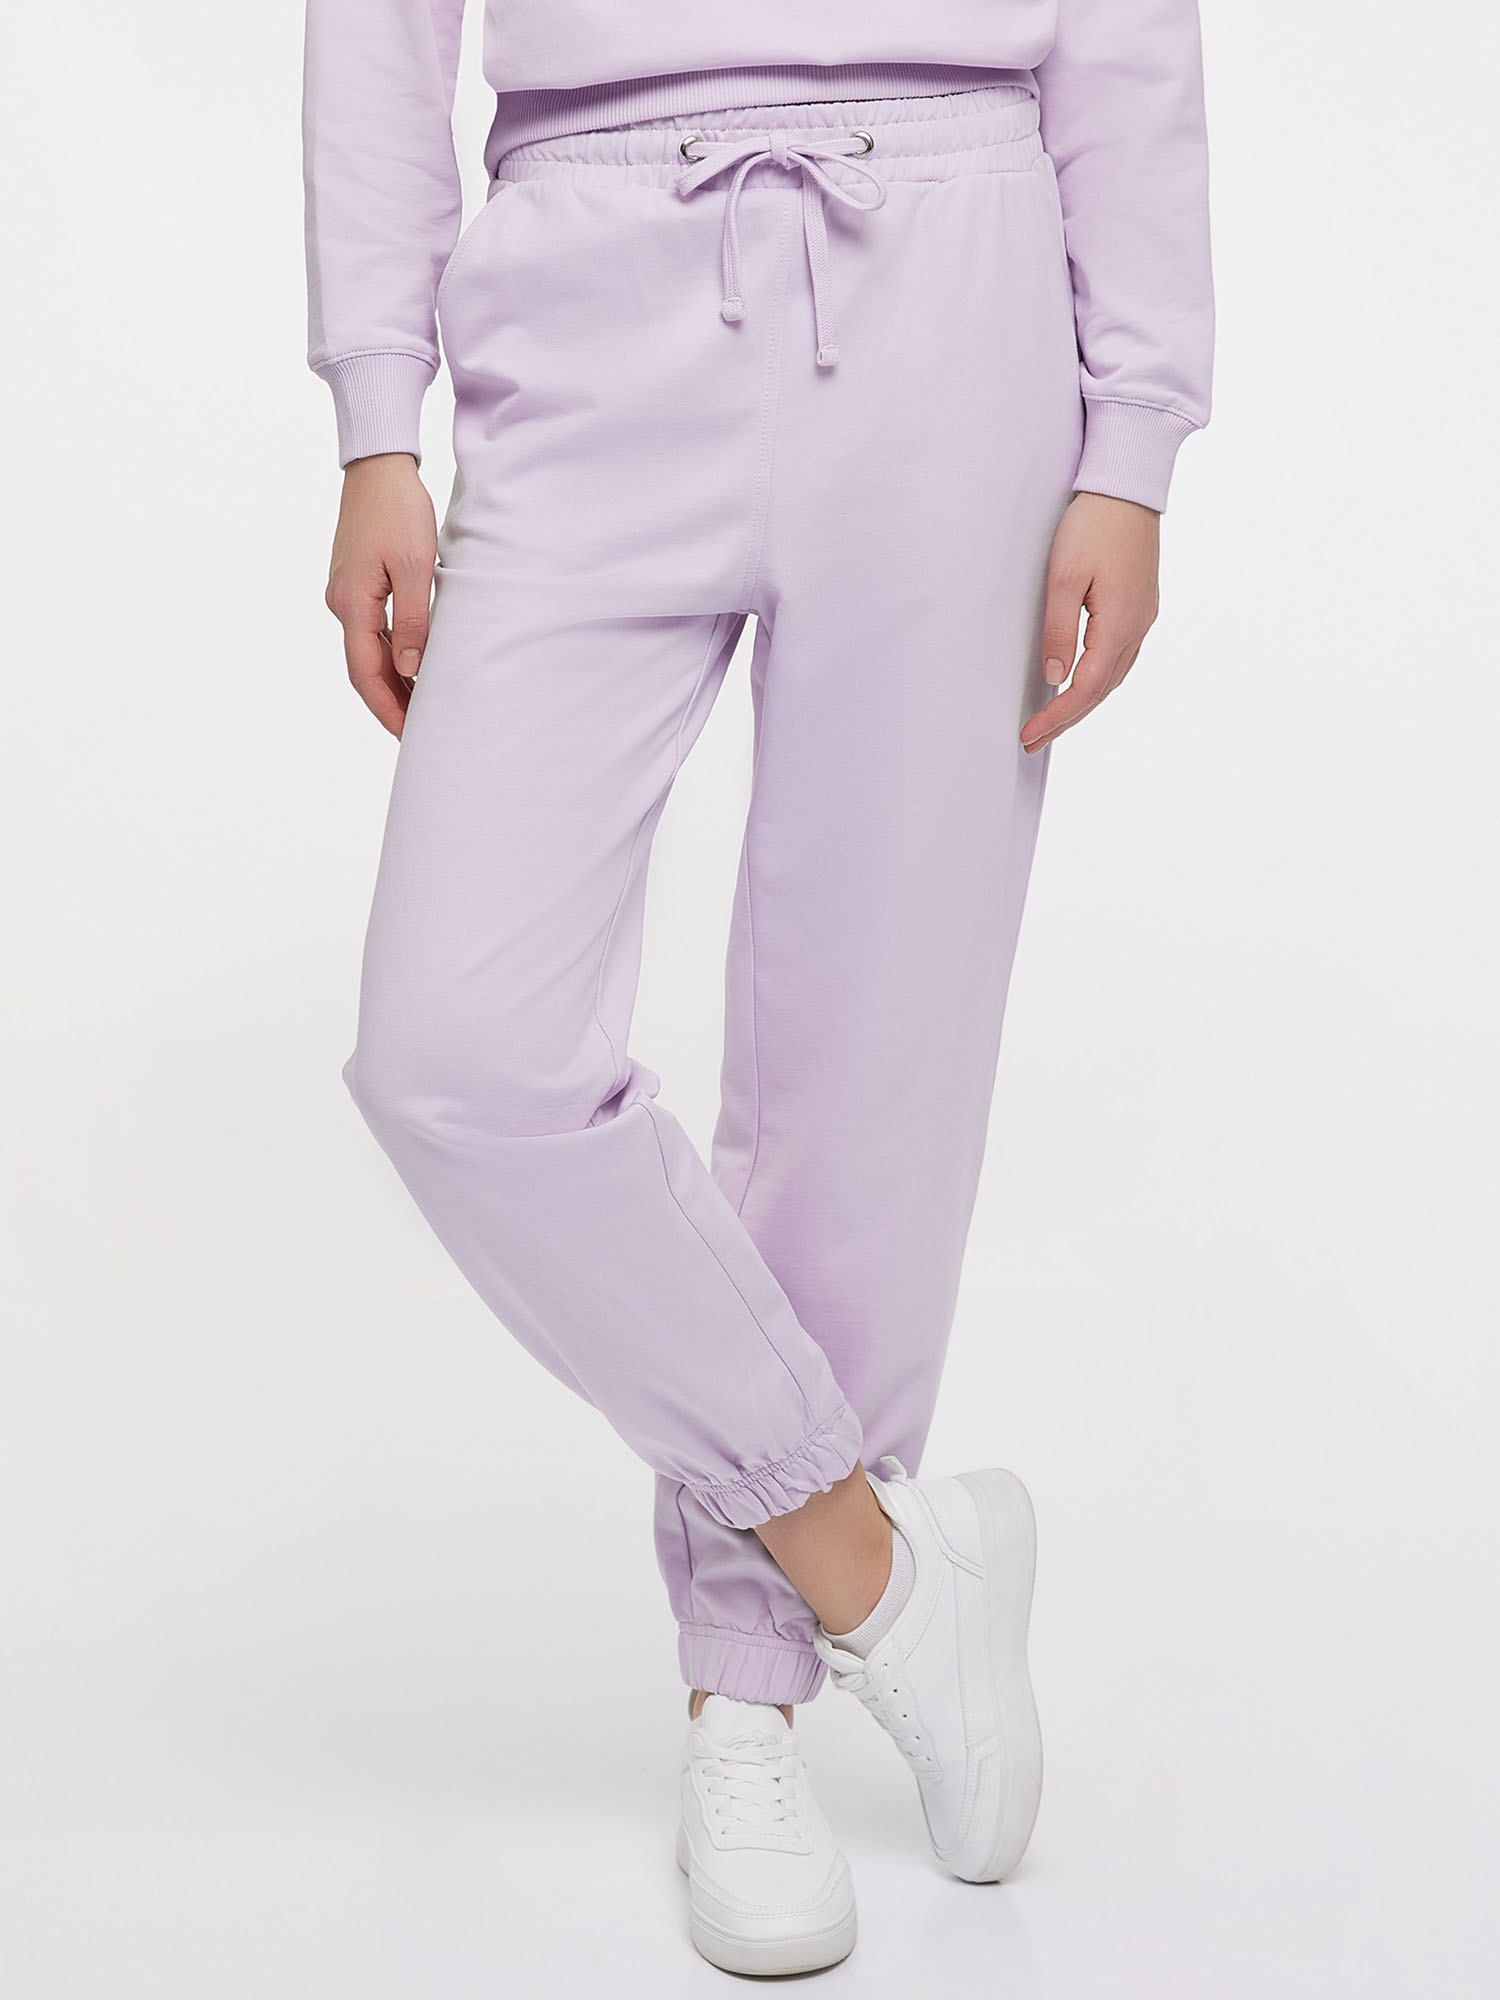 Спортивные брюки женские oodji 16701086-3 фиолетовые XS